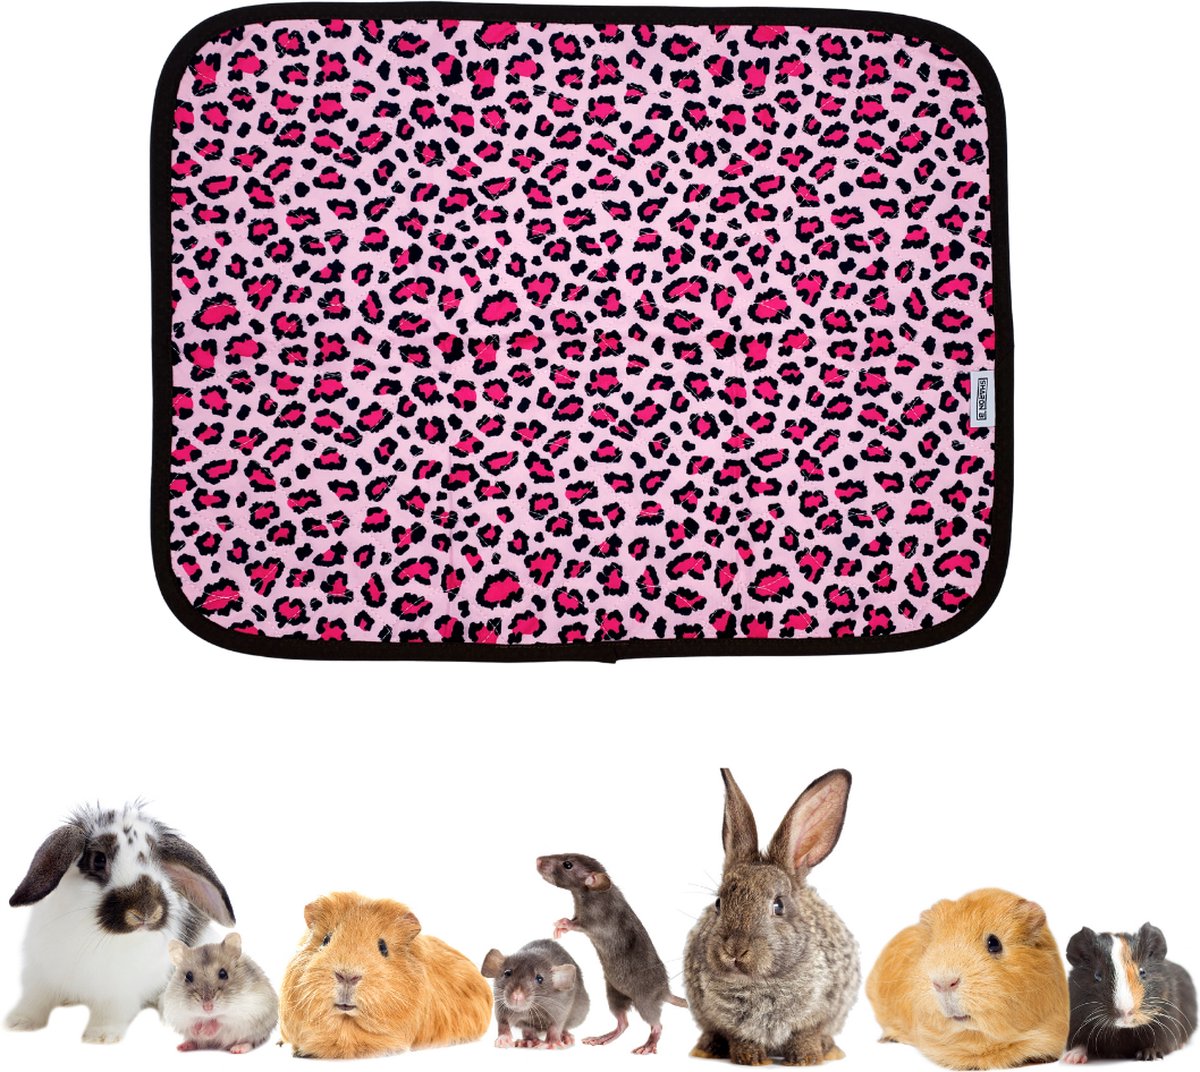 Strooiselmat - Bodembedekker Voor knaagdieren - Fleece - 76x81 cm - Roze luipaardprint - Voor konijn, cavia, muis, fret, chinchilla, rat